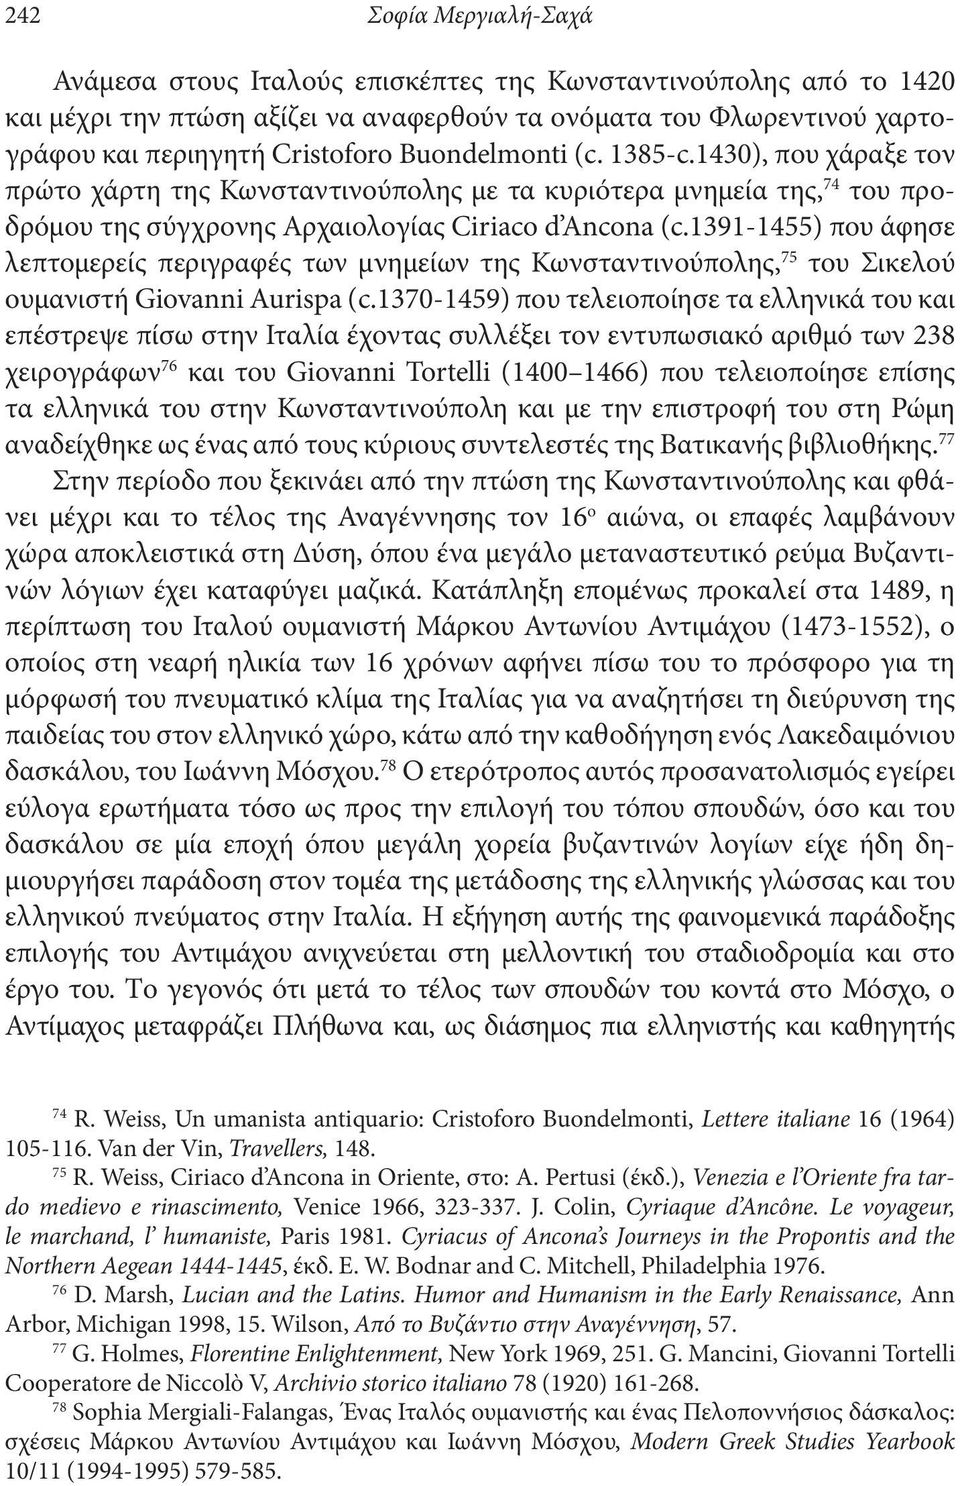 1391-1455) που άφησε λεπτομερείς περιγραφές των μνημείων της Κωνσταντινούπολης, 75 του Σικελού ου μανιστή Giovanni Aurispa (c.